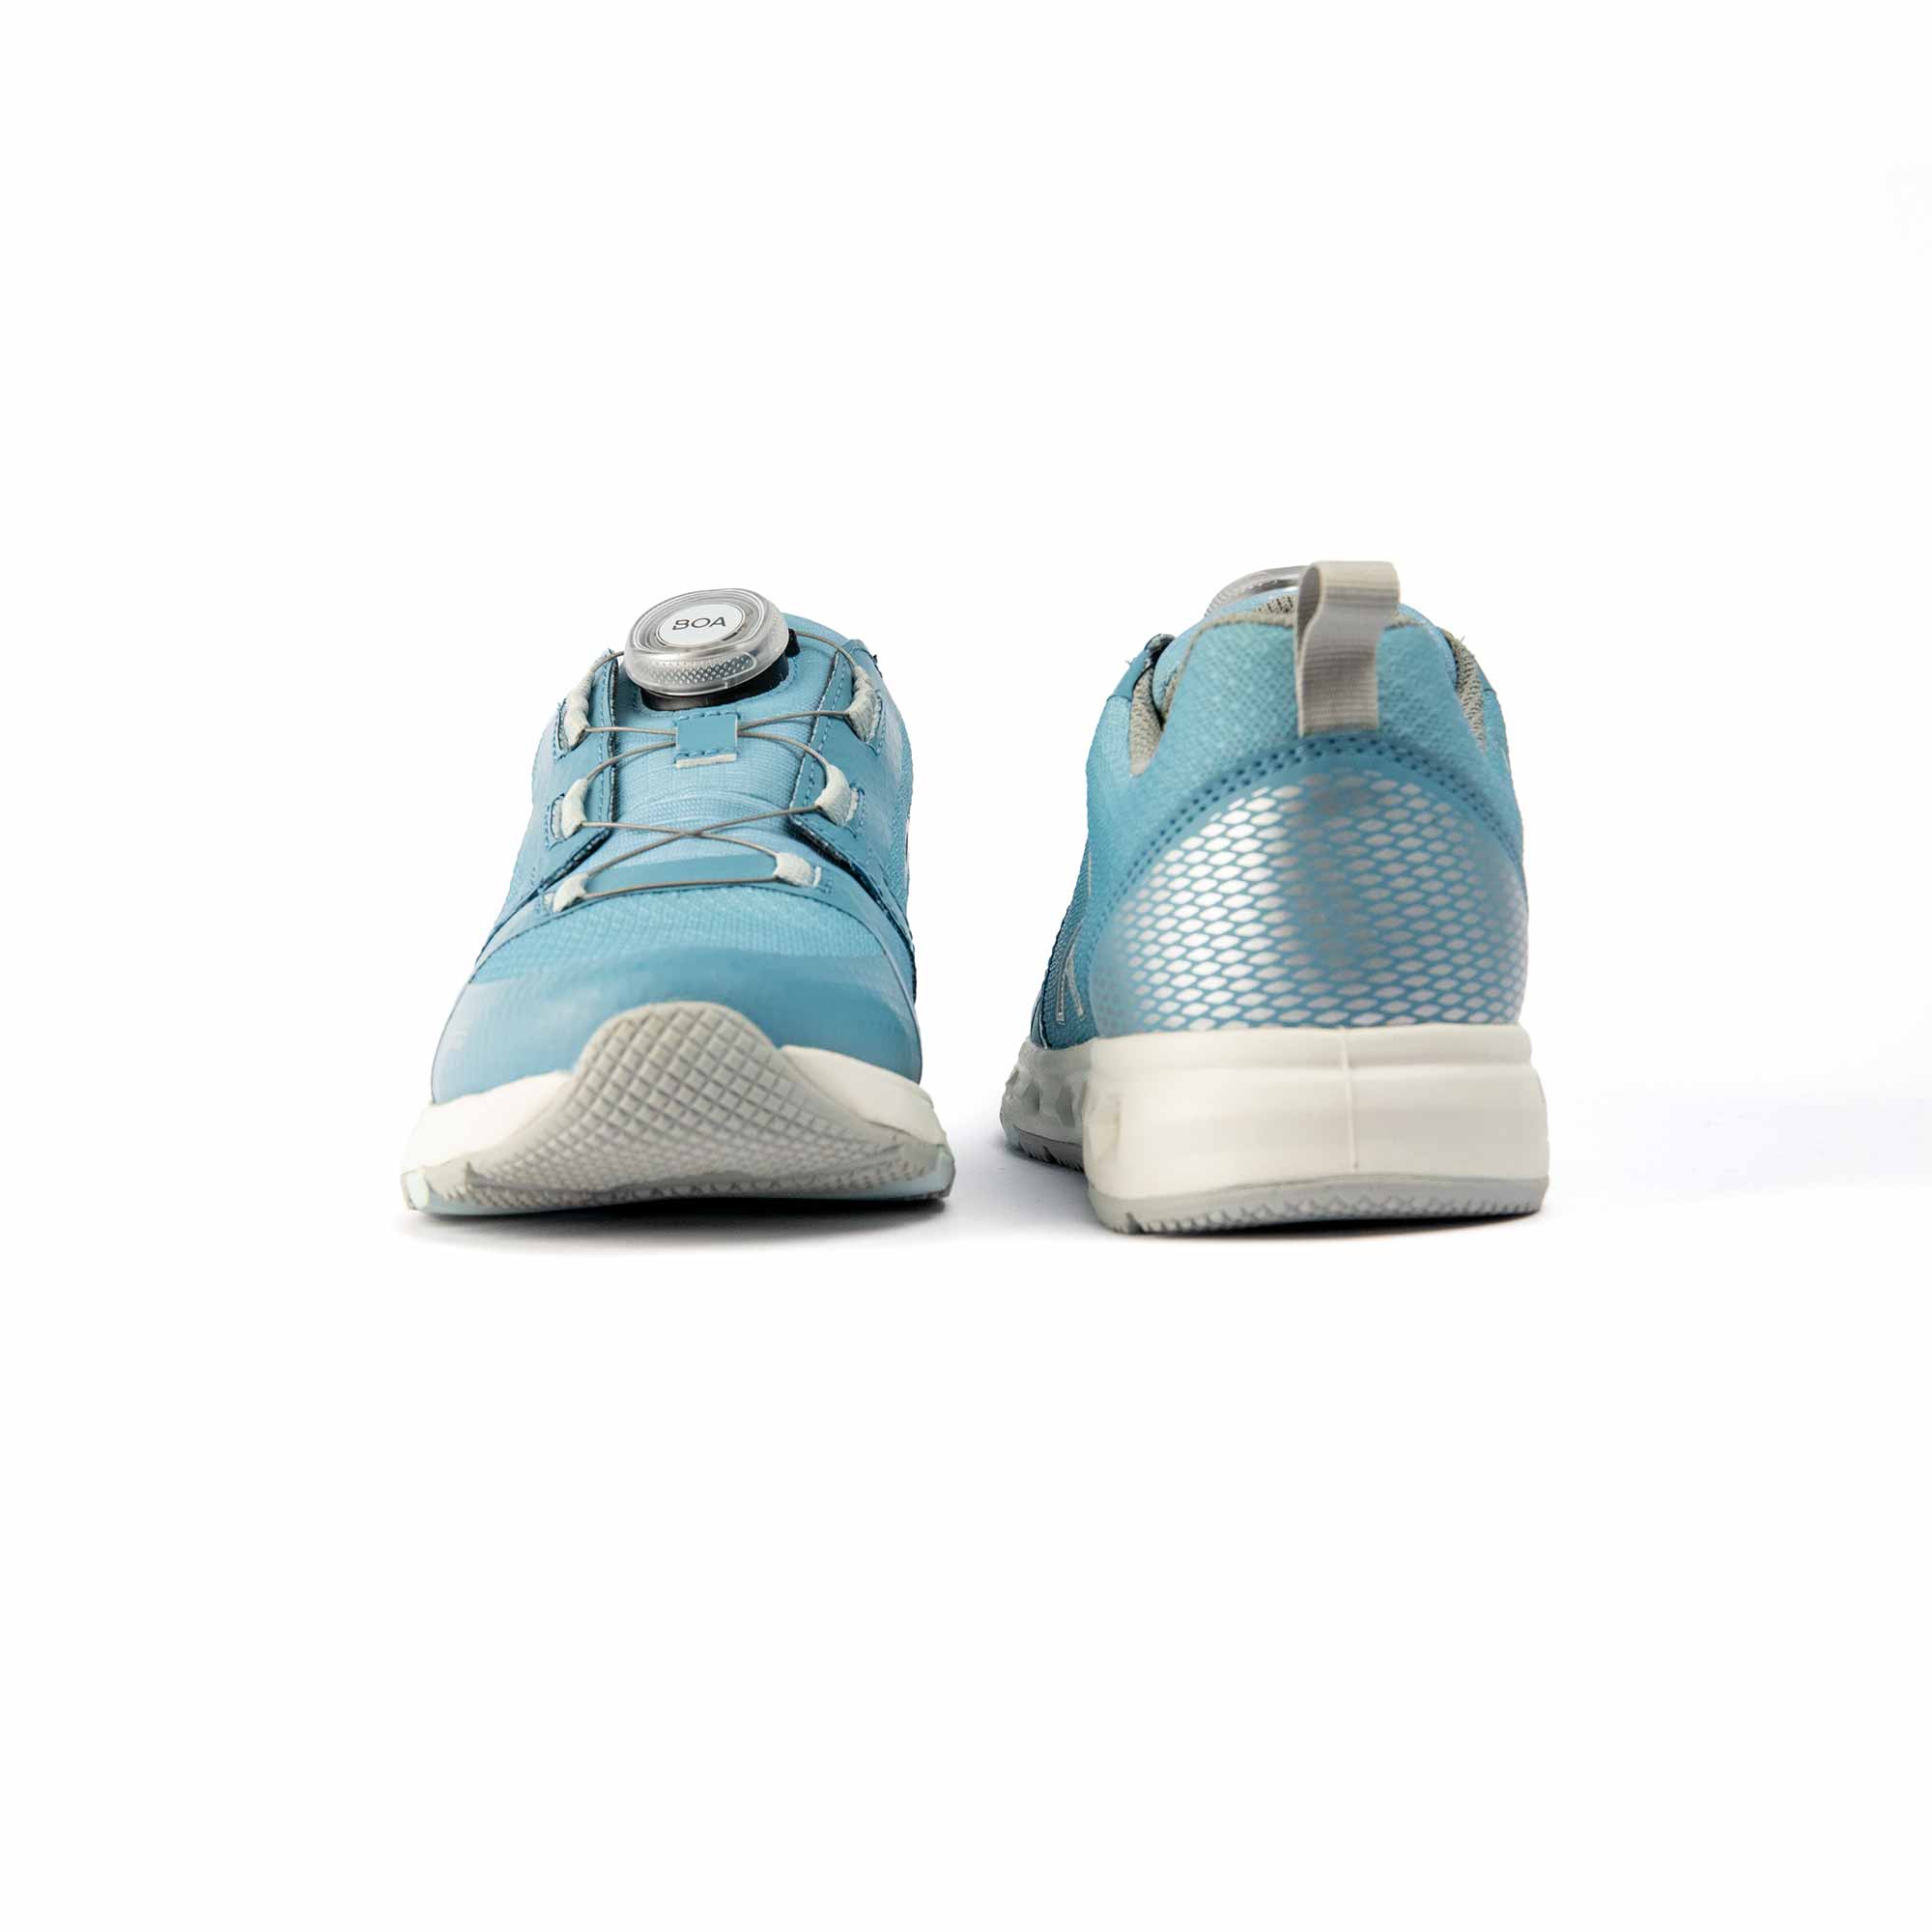 VADO Komfort Kinder Sneaker hellblau AIR Lo BOA Goretex Surround Vorder-/ Rückansicht